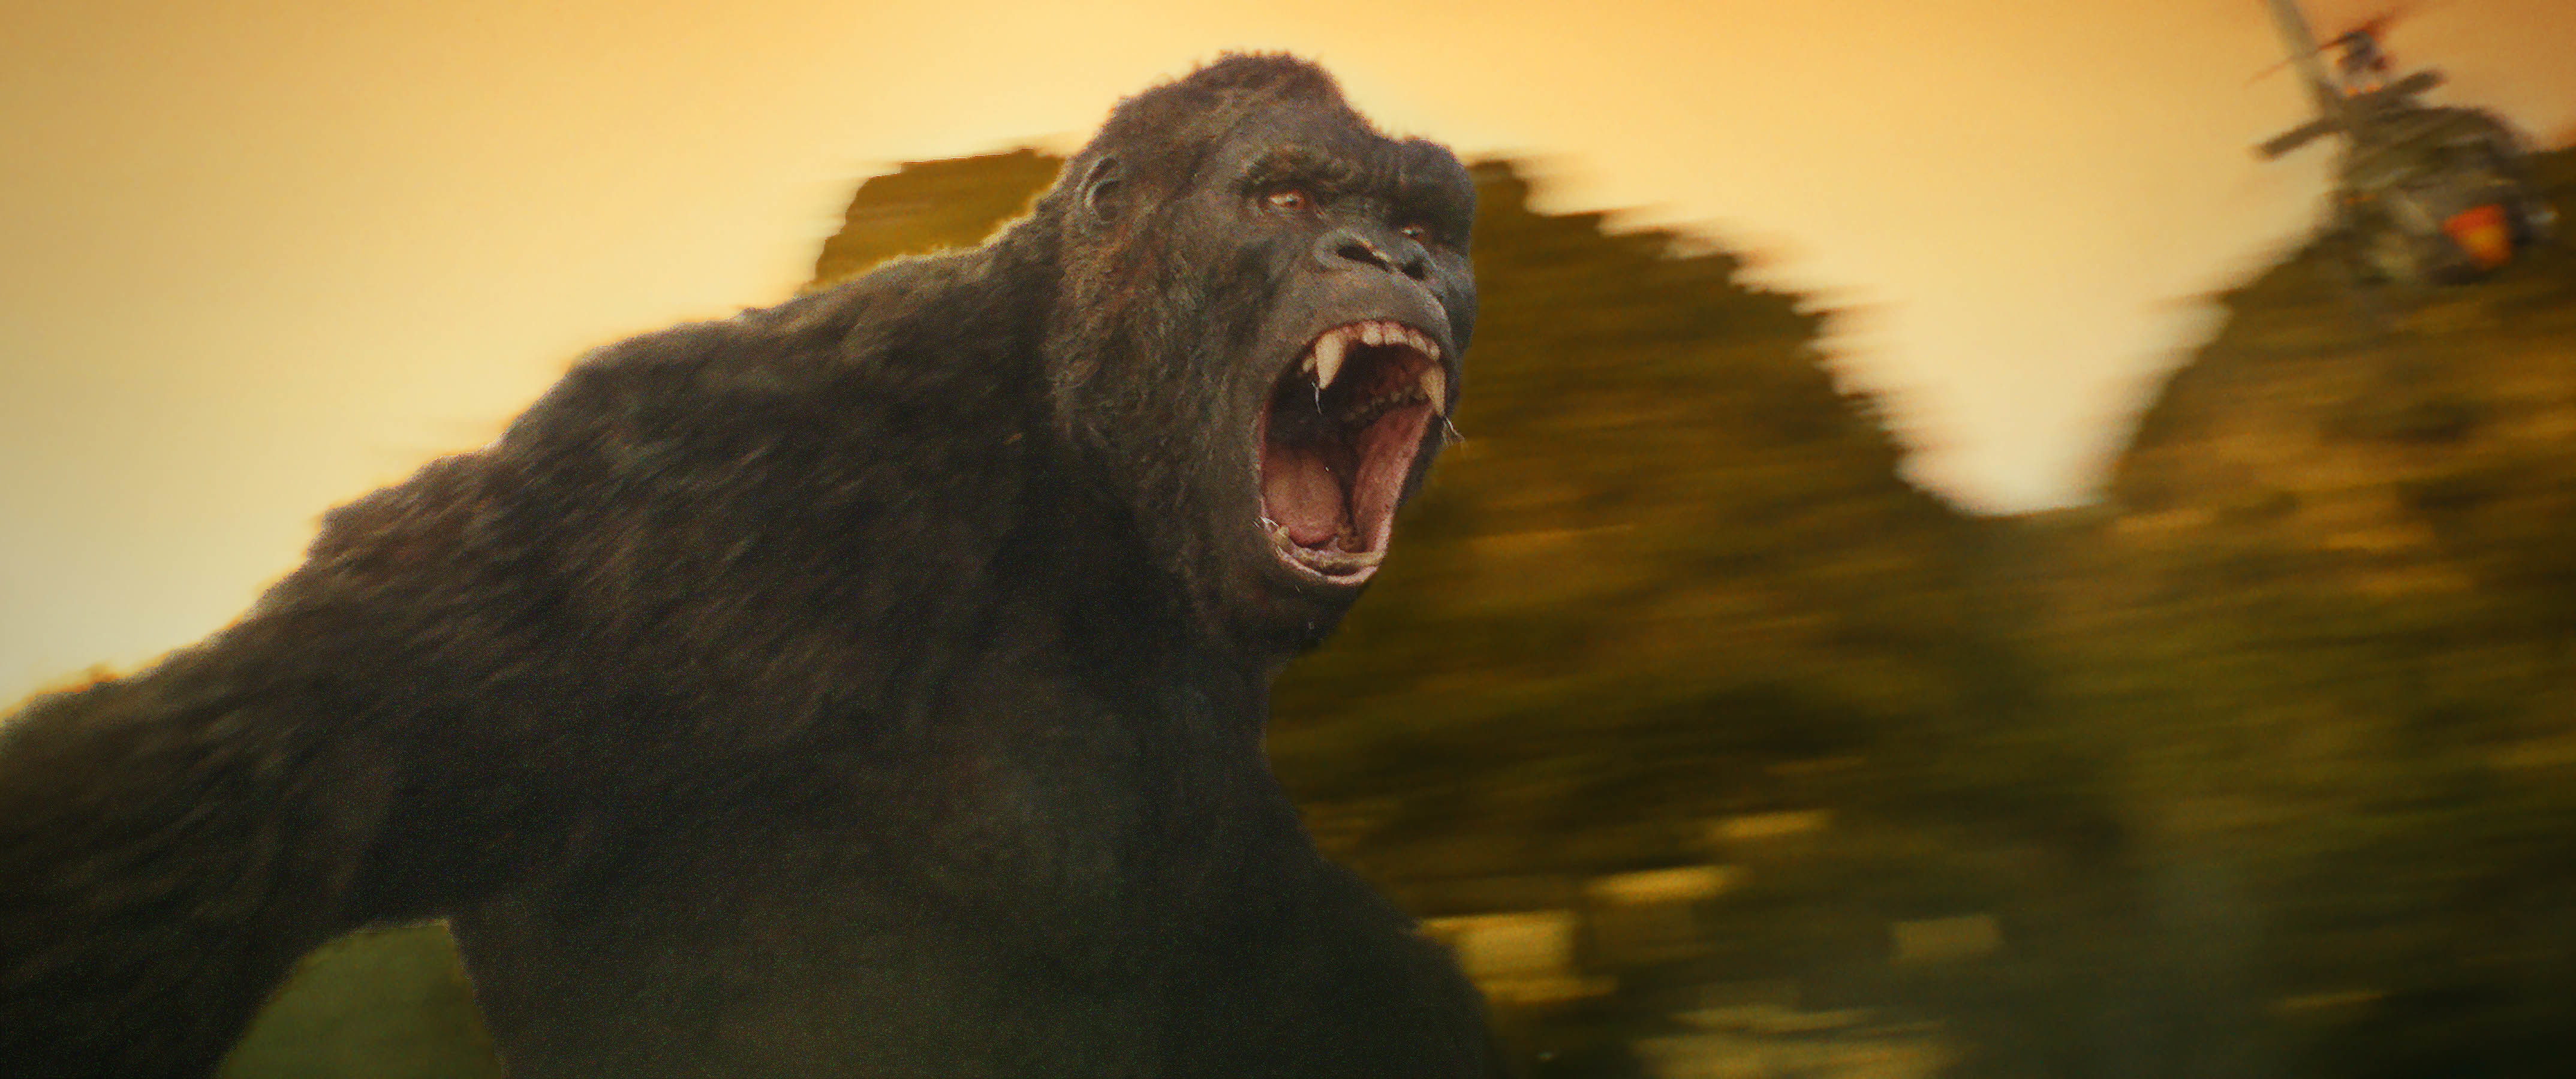 ゴジラとも対決予定の 超大型類人猿 が怒りのメガトンパンチ 映画 キングコング 髑髏島の巨神 Imax予告が公開 Spice エンタメ特化型情報メディア スパイス